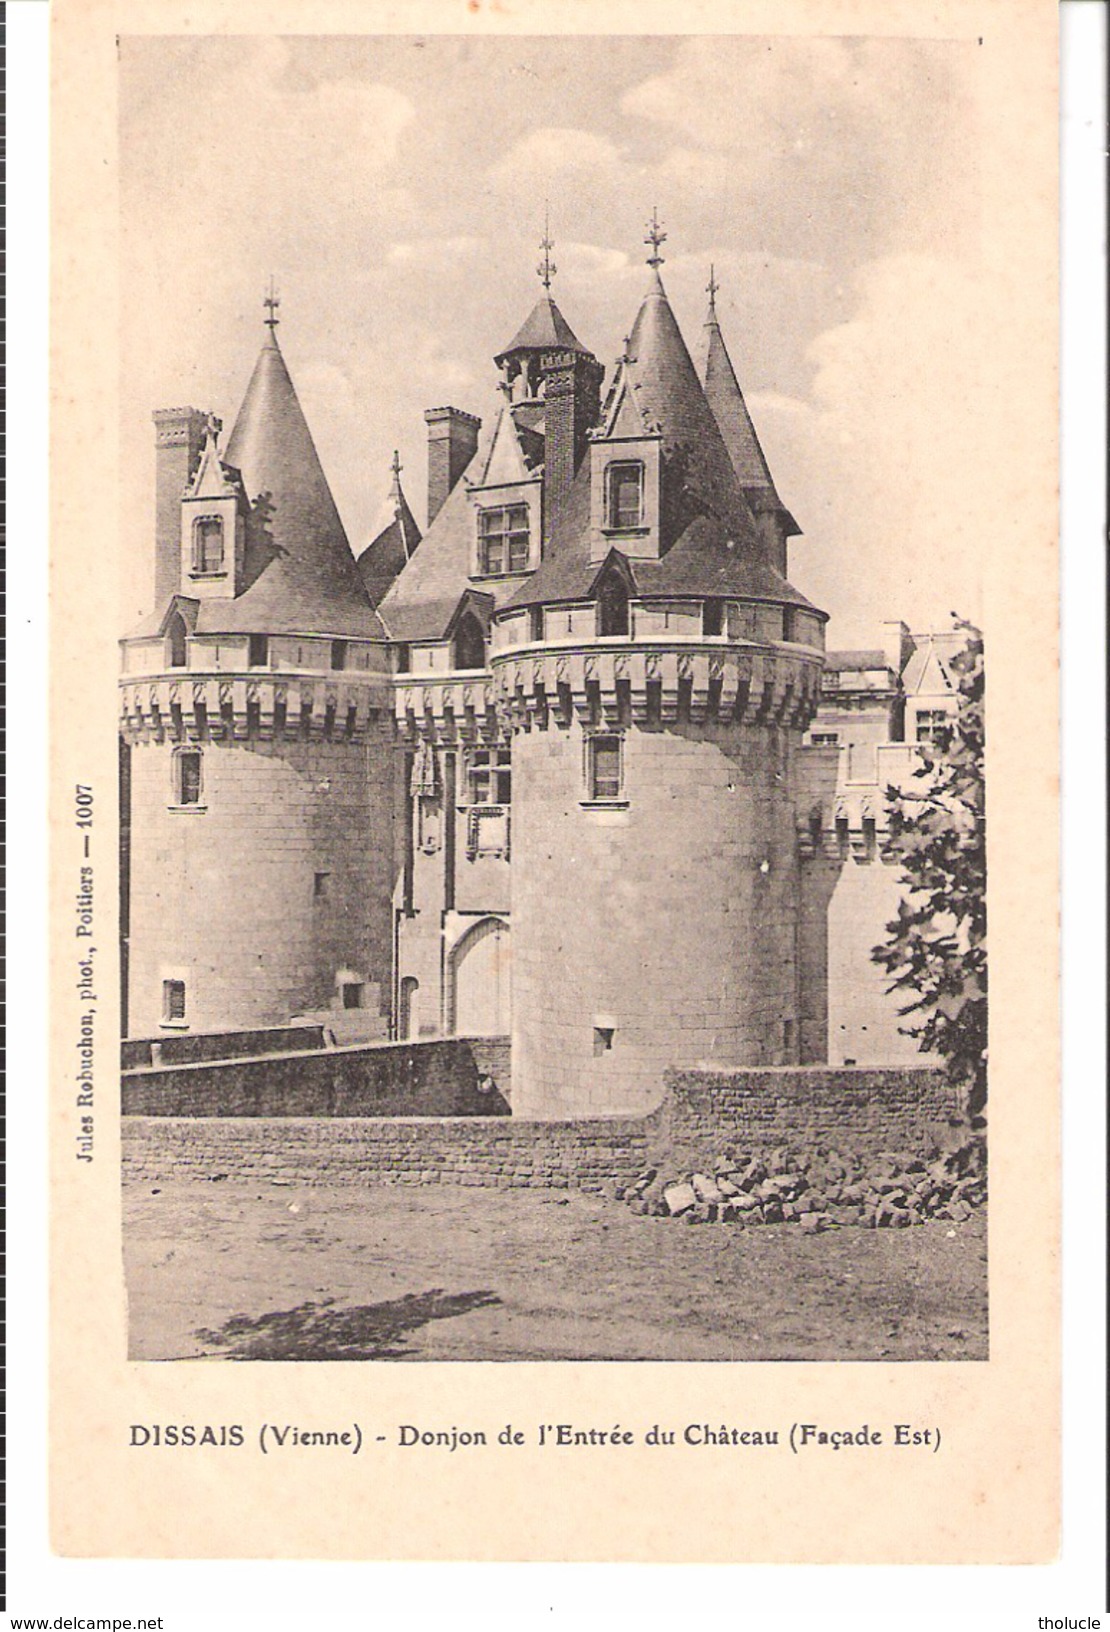 Dissais-Dissay (Jaunay-Clan-Saint-Georges-les-Baillargeaux)-+/-1910-Donjon De L'Entrée Du Château (façade Est) - Saint Georges Les Baillargeaux